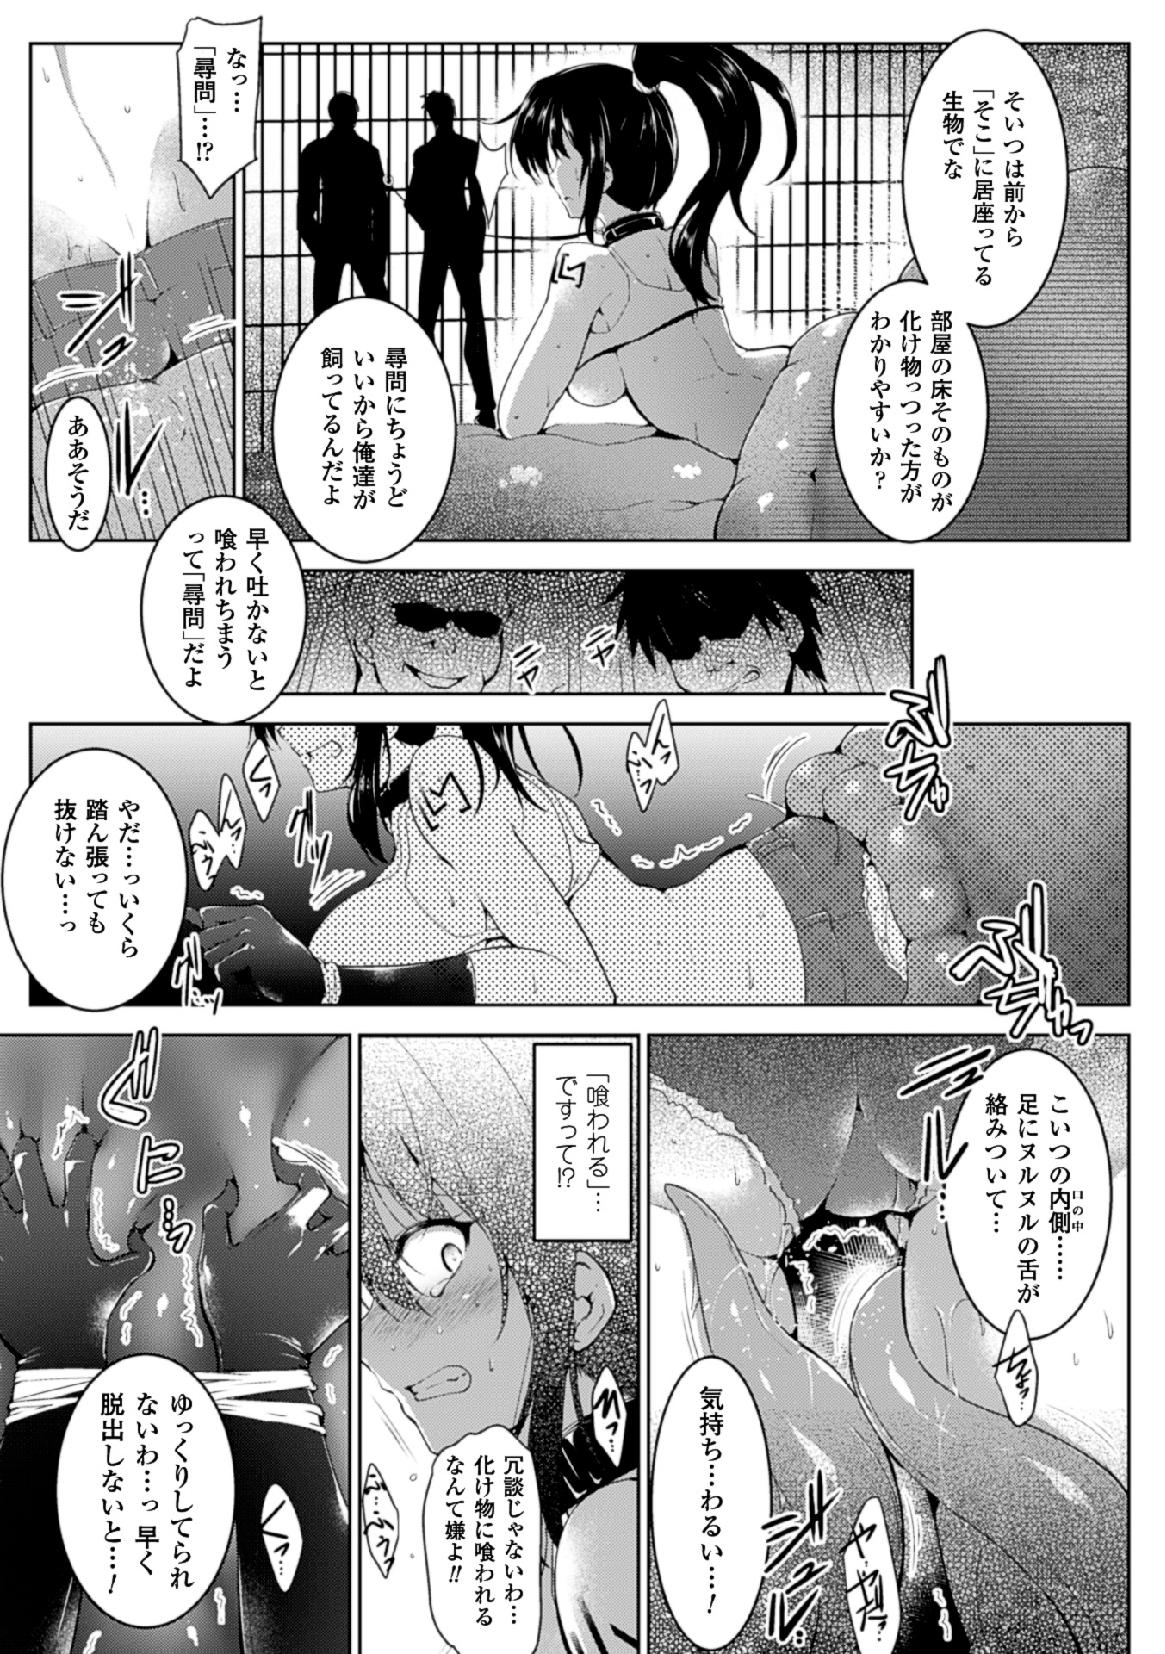 Curvy [Anthology] 2D Comic Magazine - Marunomi Iki Jigoku Monster ni Hoshokusareta Heroine-tachi Vol. 4 [Digital] Italiano - Page 7